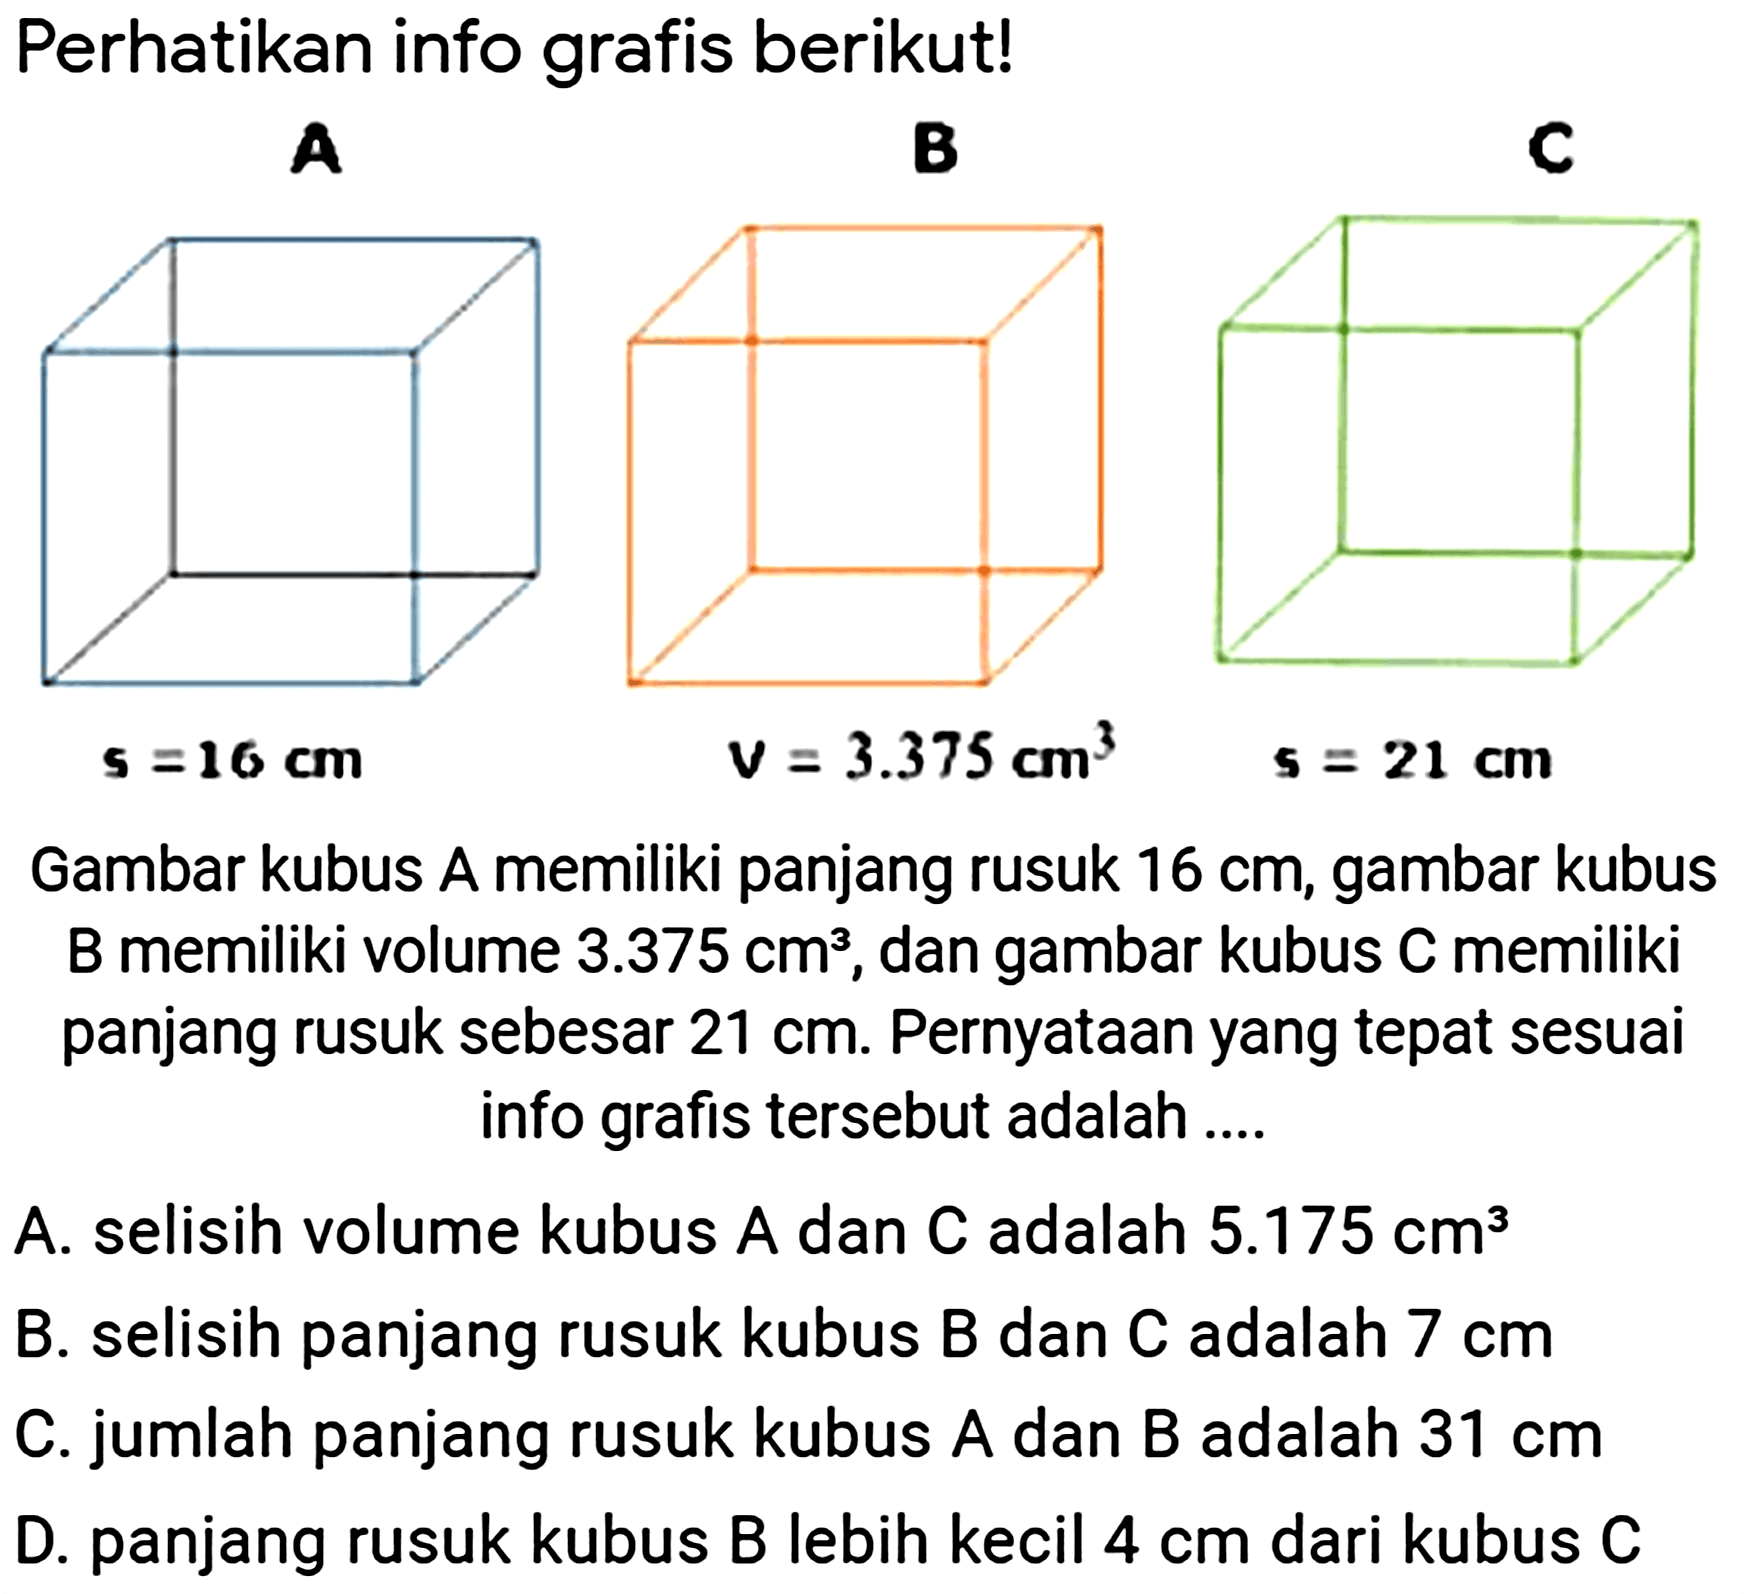 Perhatikan info grafis berikut!
 s=16 cm 
 v=3.375 cm^(3) 
 s=21 cm 
Gambar kubus A memiliki panjang rusuk  16 cm , gambar kubus B memiliki volume  3.375 cm^(3) , dan gambar kubus  C  memiliki panjang rusuk sebesar  21 cm . Pernyataan yang tepat sesuai info grafis tersebut adalah ....
A. selisih volume kubus  A  dan  C  adalah  5.175 cm^(3) 
B. selisih panjang rusuk kubus  B  dan  C  adalah  7 cm 
C. jumlah panjang rusuk kubus  A  dan  B  adalah  31 cm 
D. panjang rusuk kubus  B  lebih kecil  4 cm  dari kubus  C 